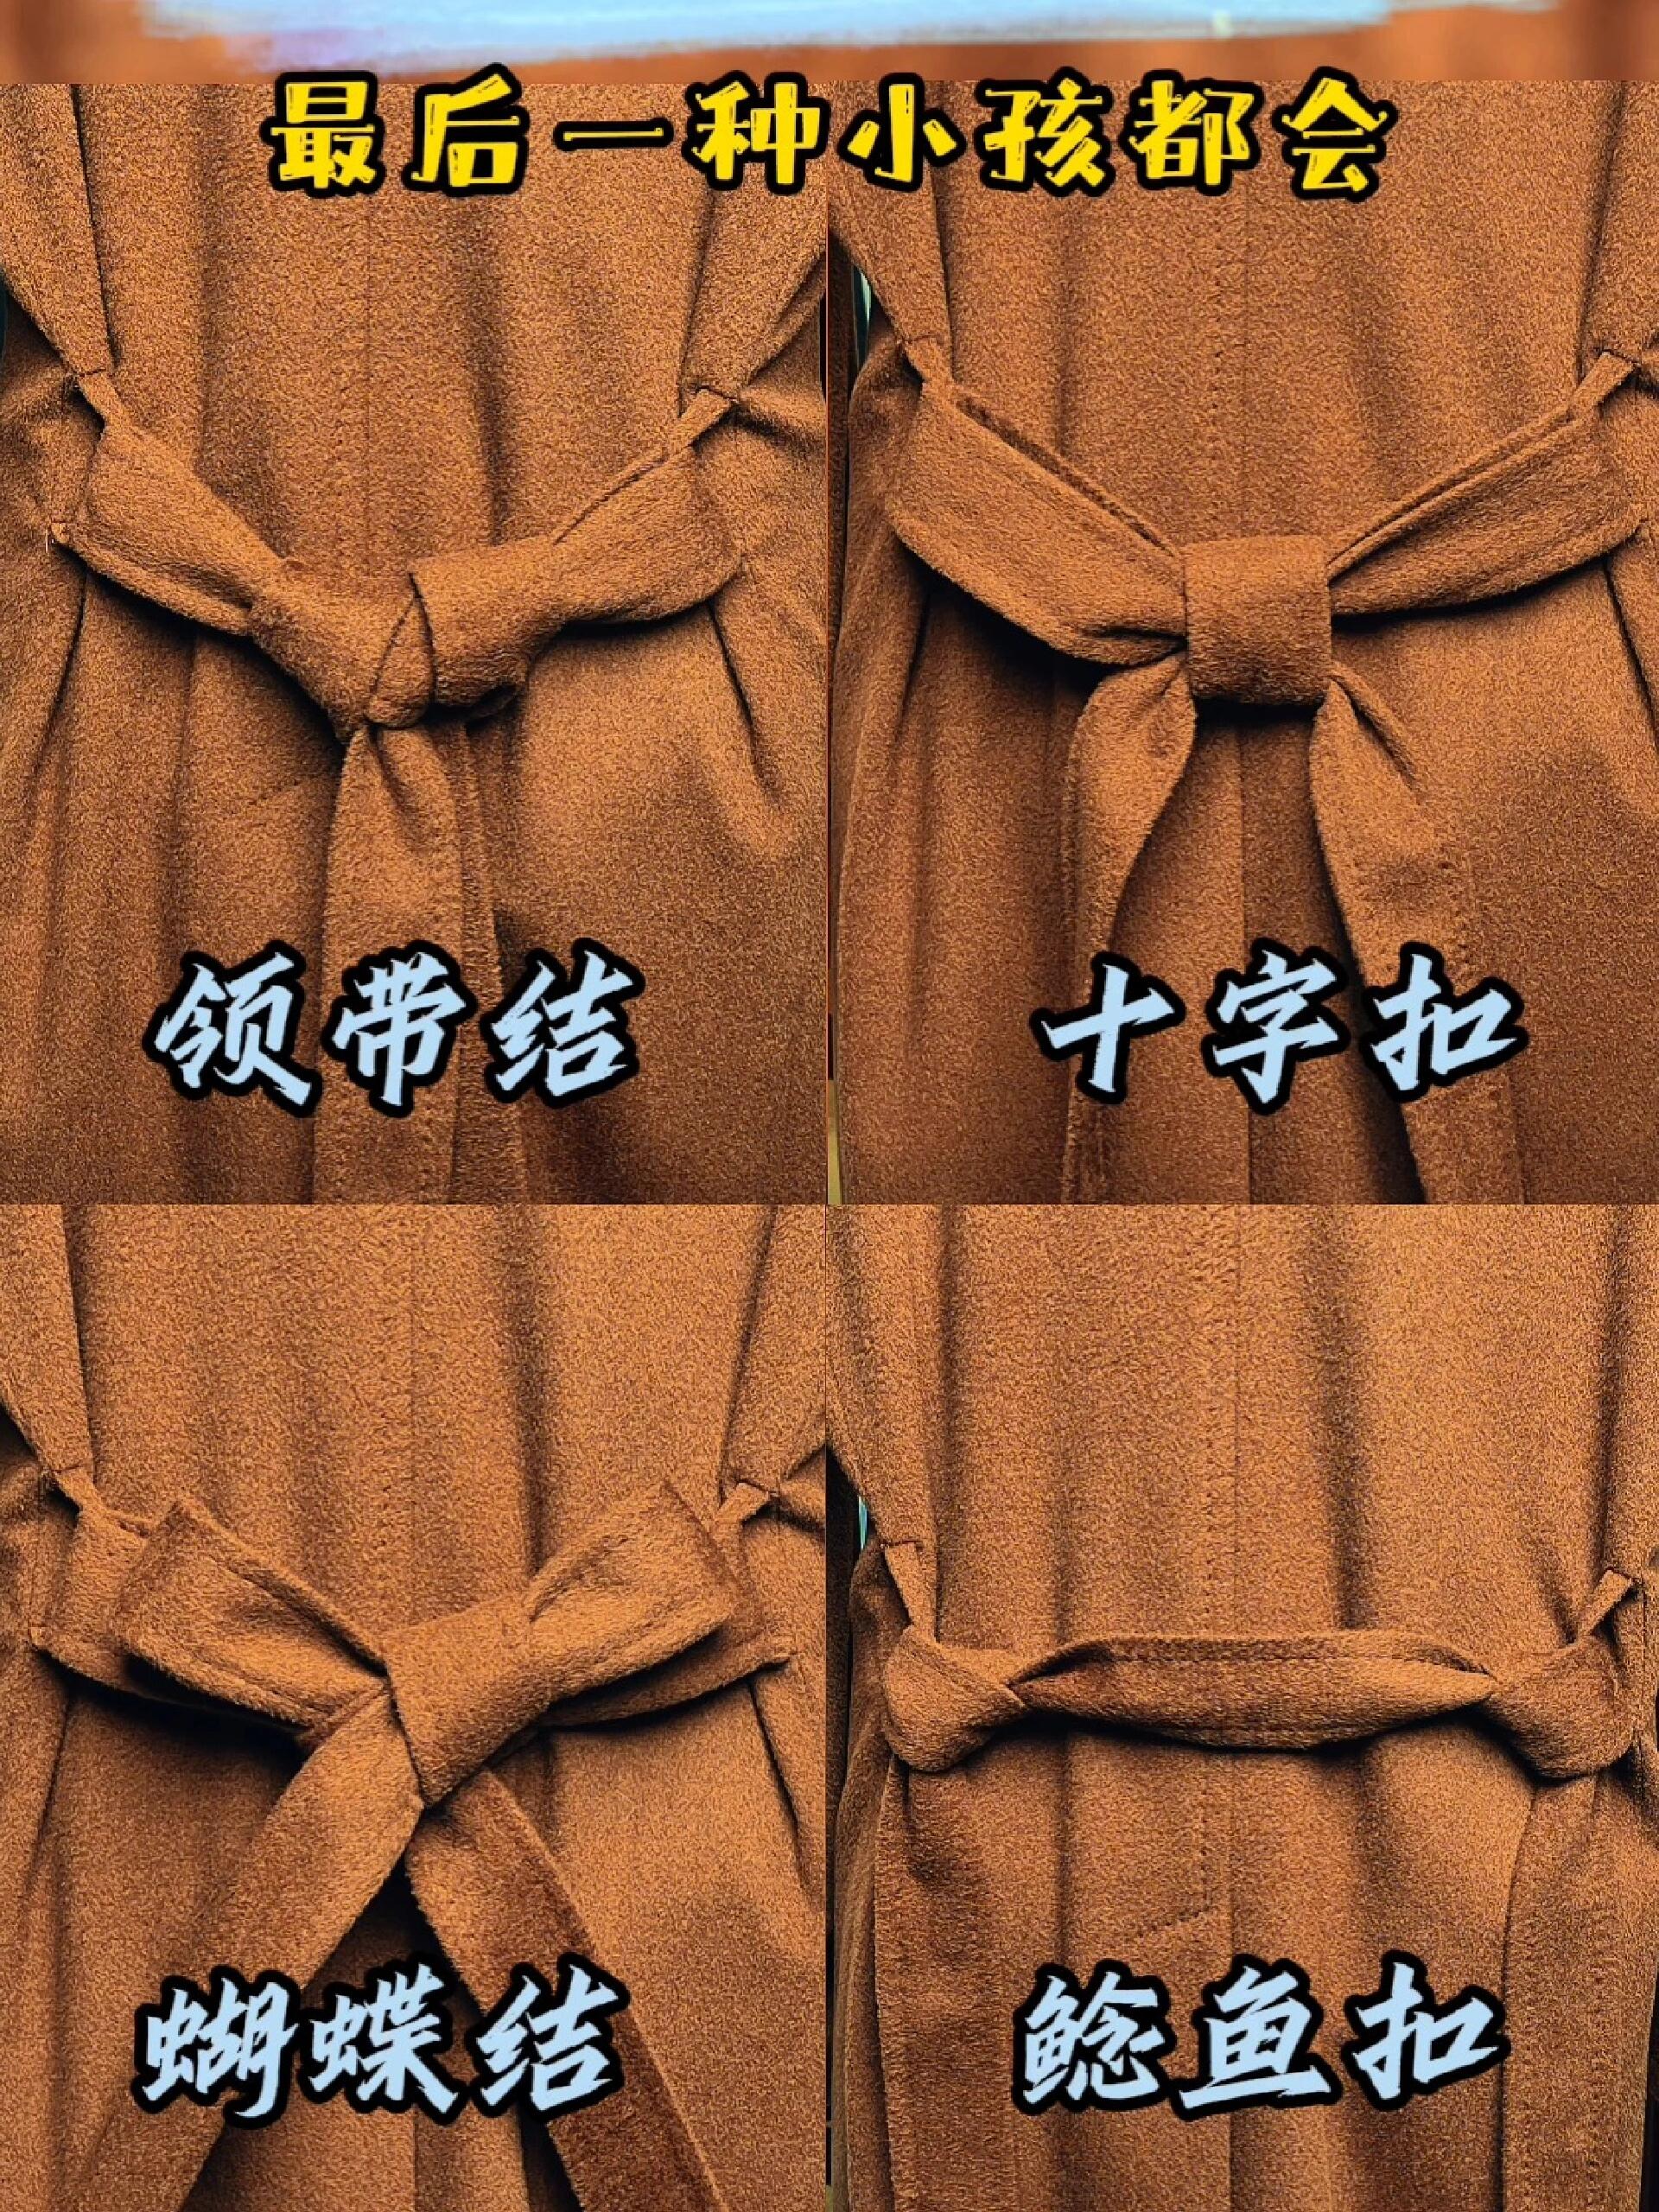 风衣腰带的各种系法图片